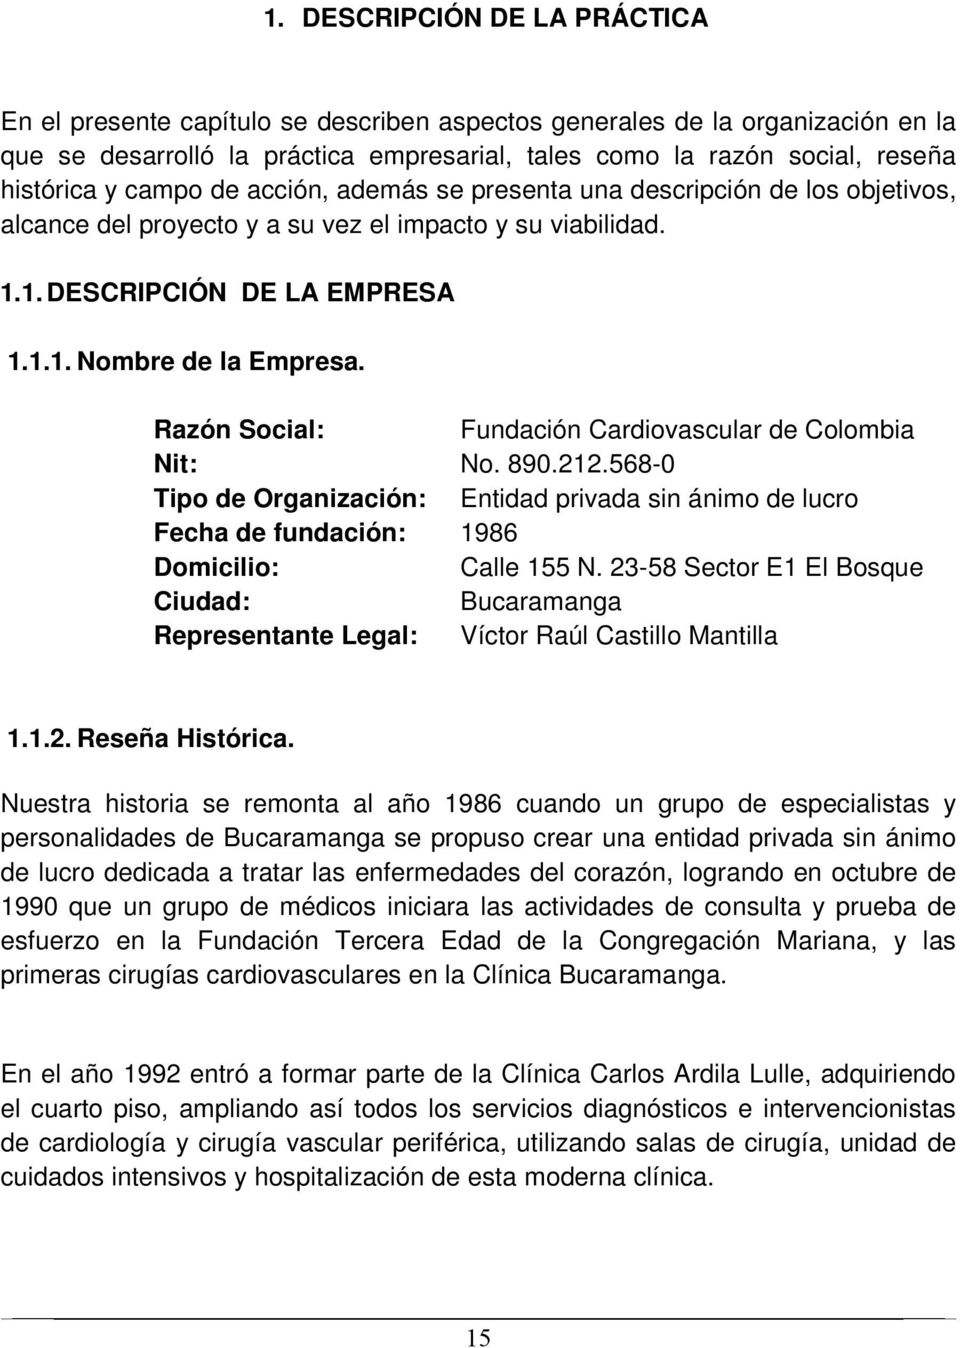 Razón Social: Fundación Cardiovascular de Colombia Nit: No. 890.212.568-0 Tipo de Organización: Entidad privada sin ánimo de lucro Fecha de fundación: 1986 Domicilio: Calle 155 N.